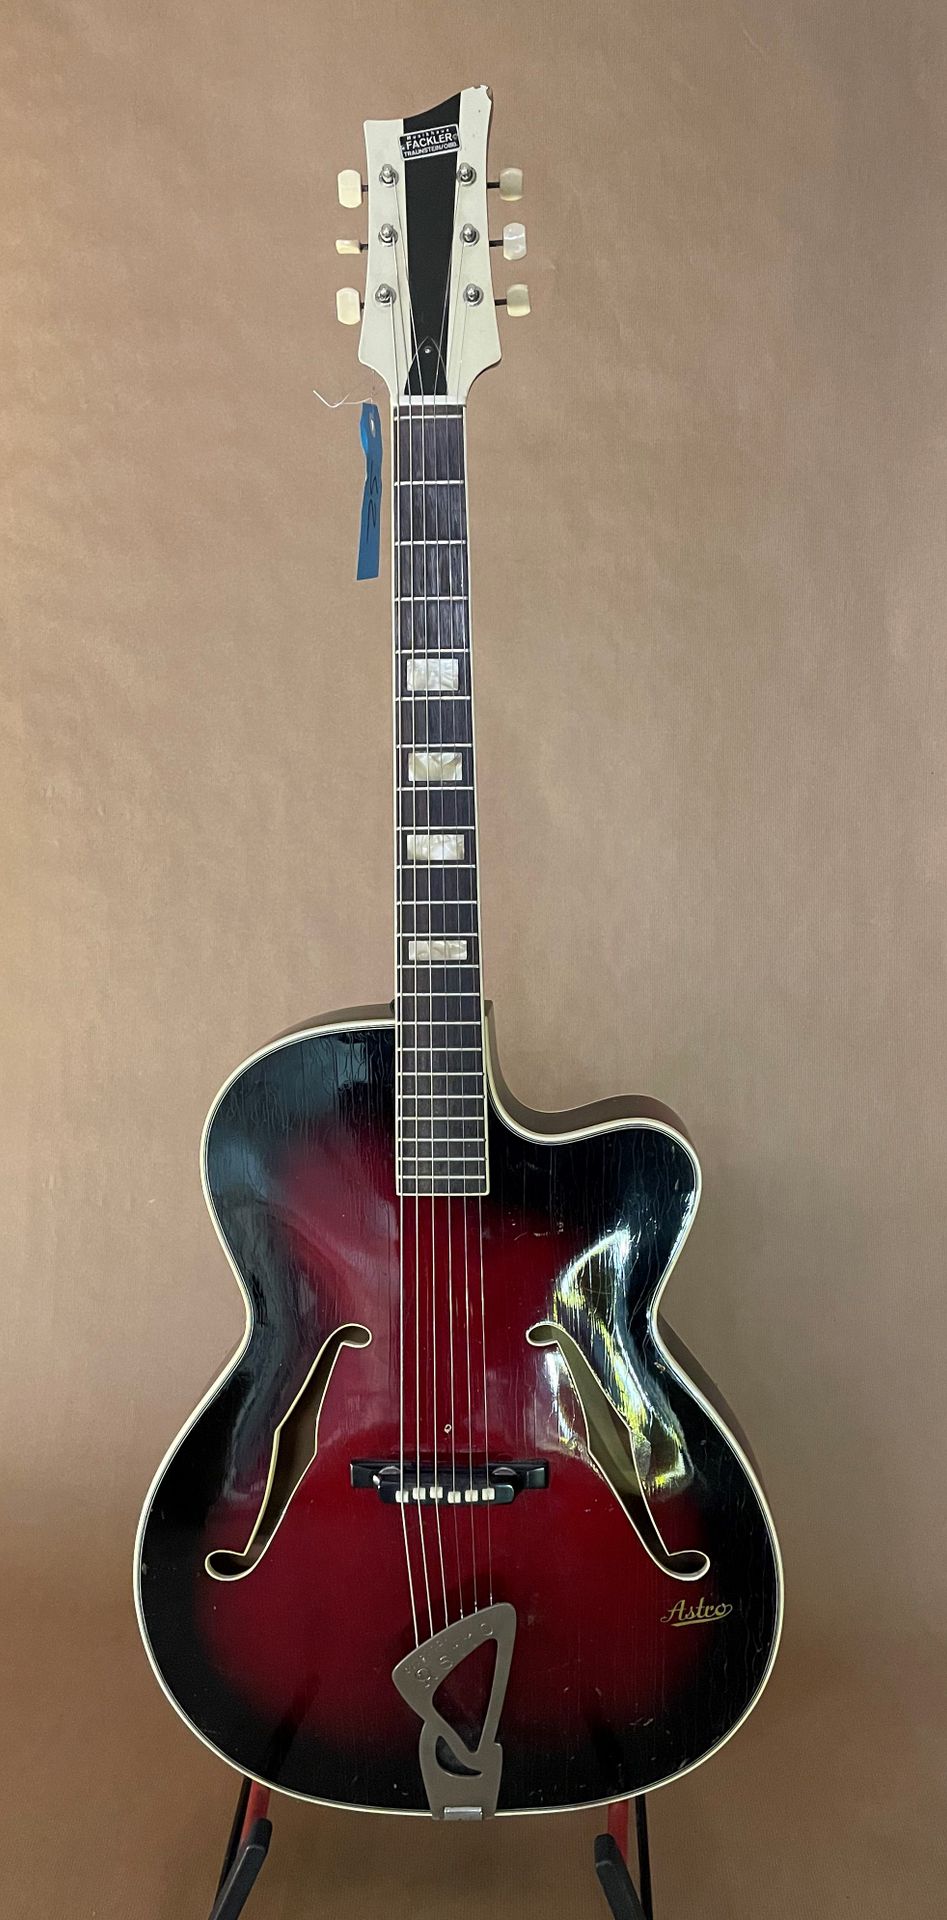 Null Guitarra archtop de jazz marca ASTRO fabricación alemana c.1960

Acabado Ch&hellip;